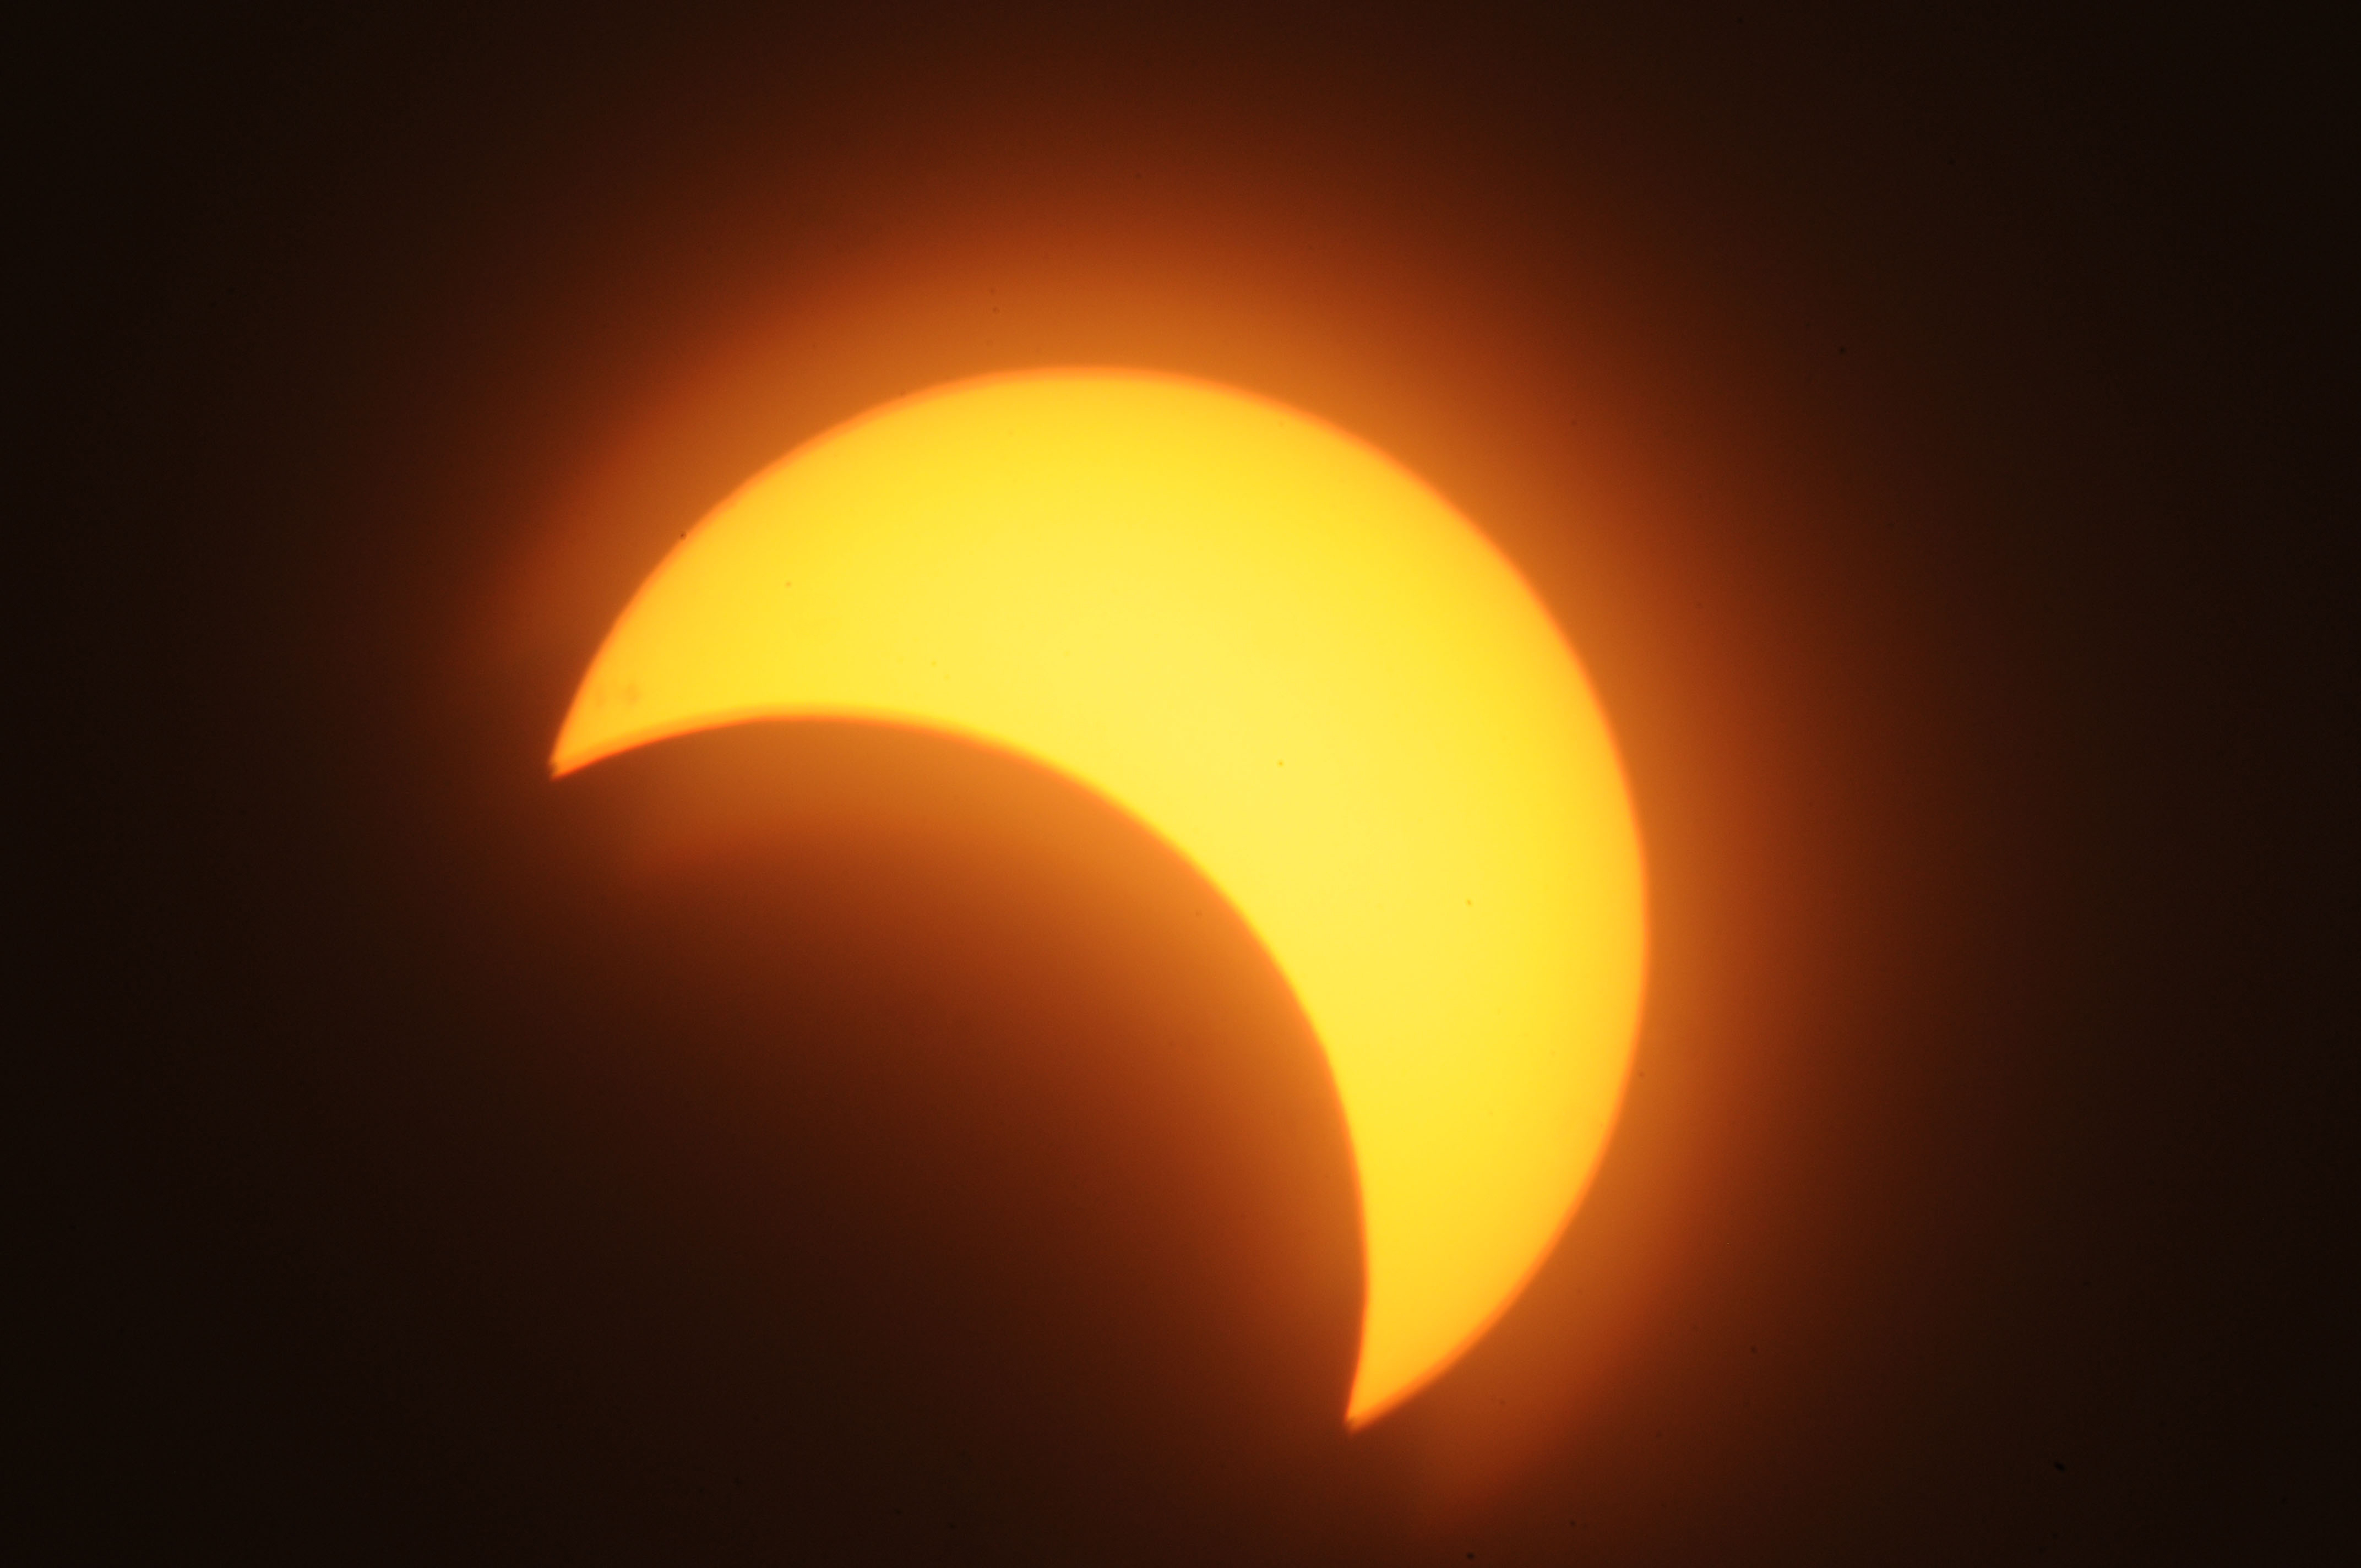 Partial solar eclipse darkens Colorado sky